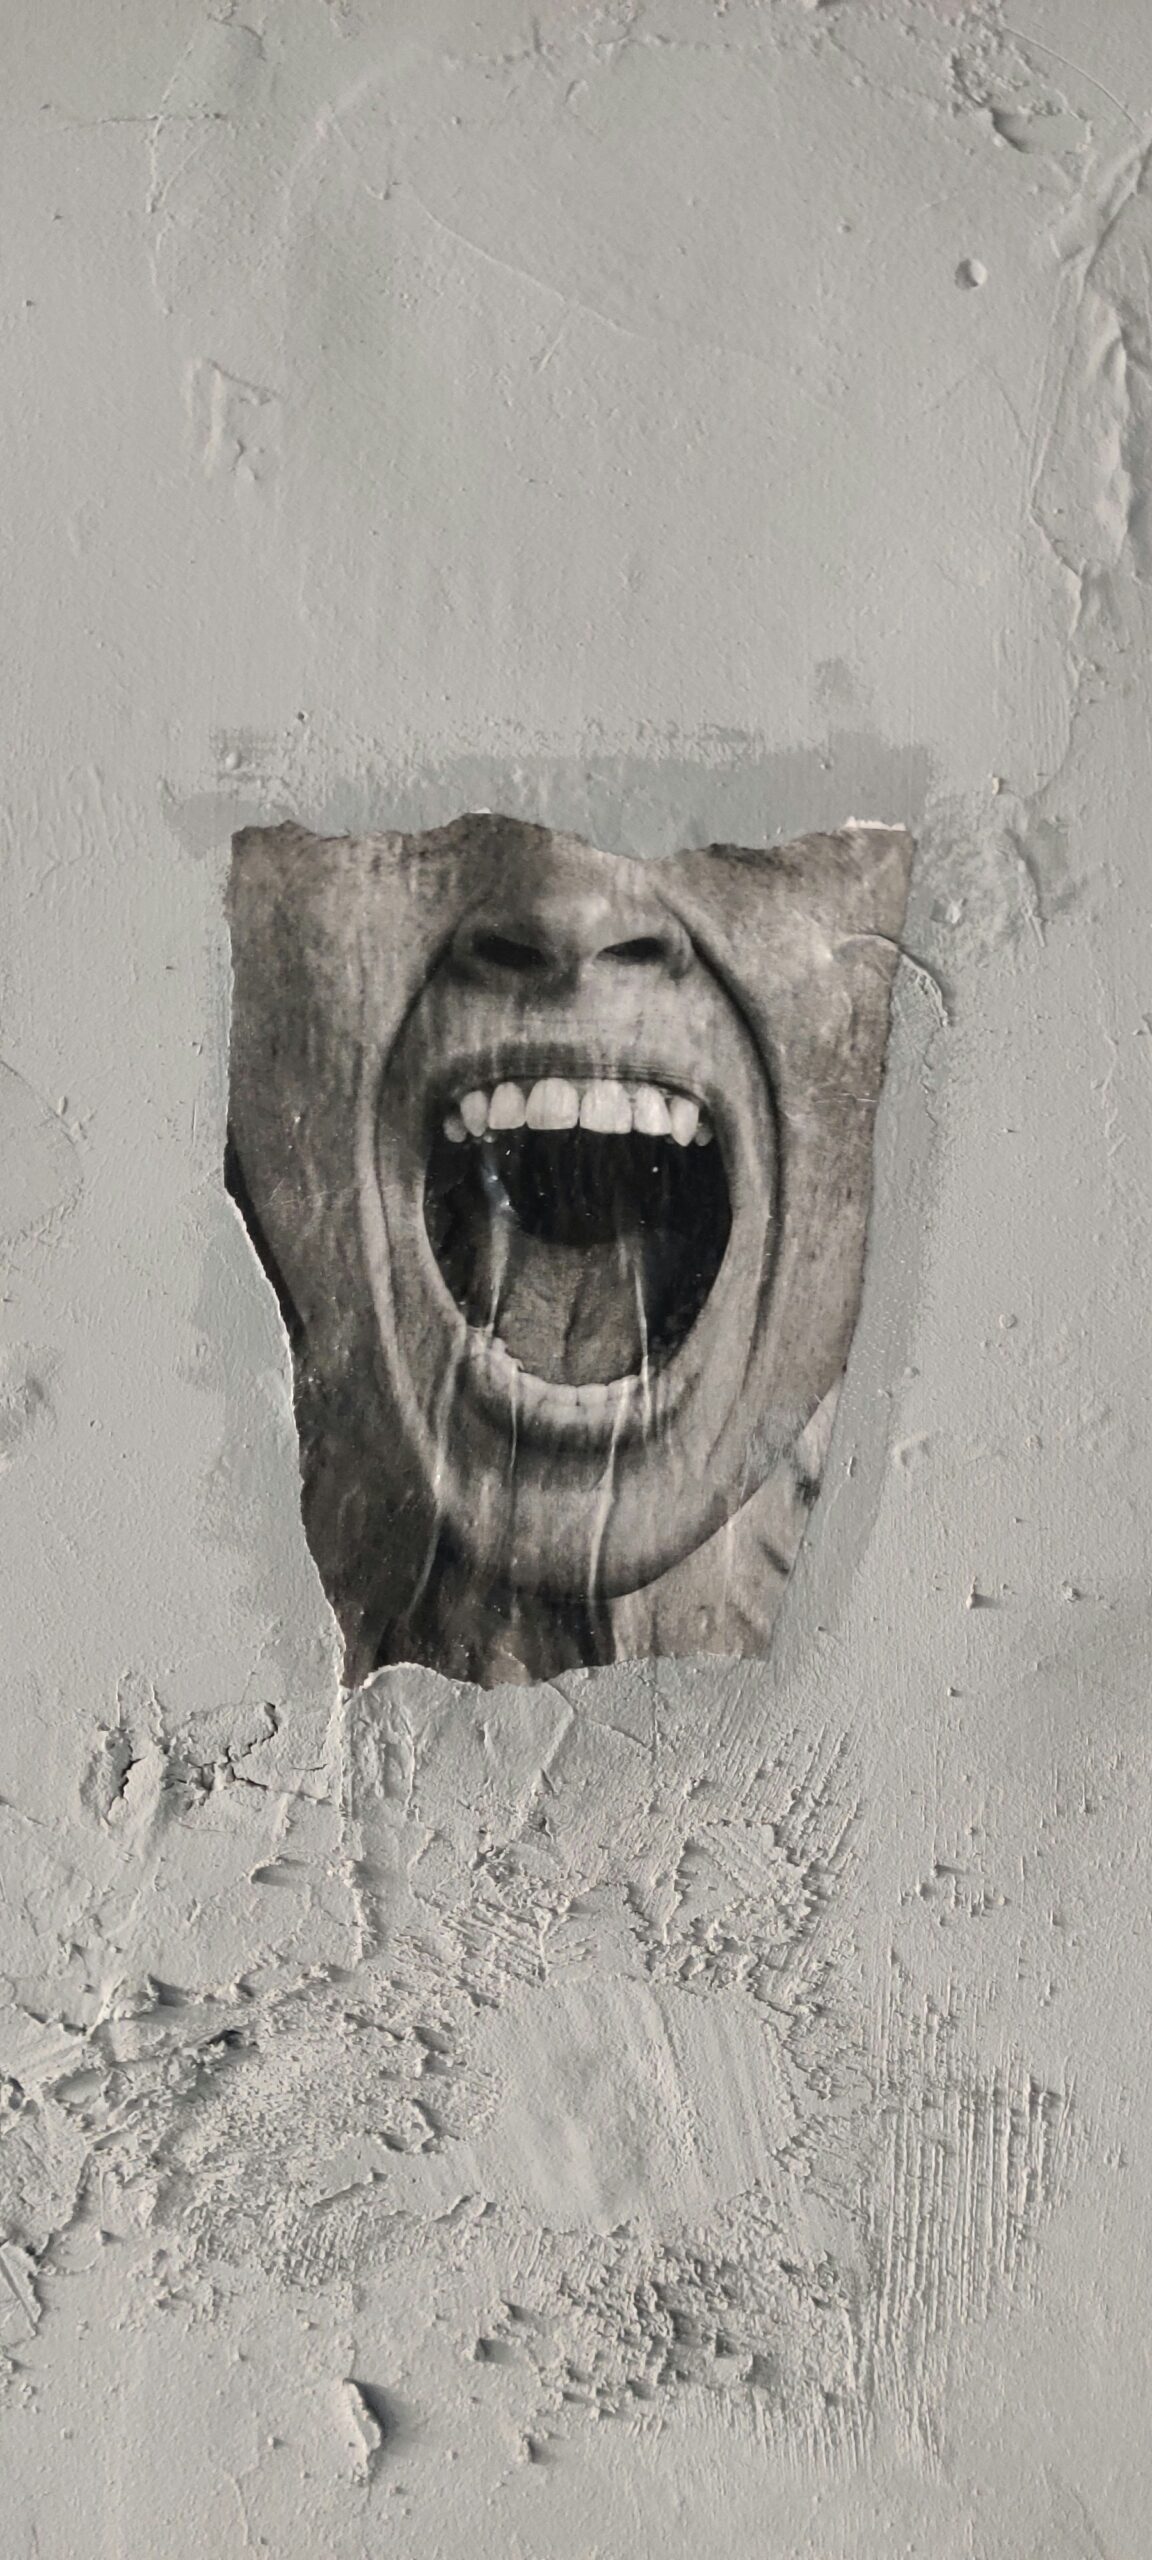 Braunes menschliches Gesicht aus Holz geschnitzt an der Wand. Der Mund ist weit aufgerissen und erinnert an einen Schrei, der an das Tourette-Syndrom erinnert. Betroffene können ihre Tics nicht kontrollieren.